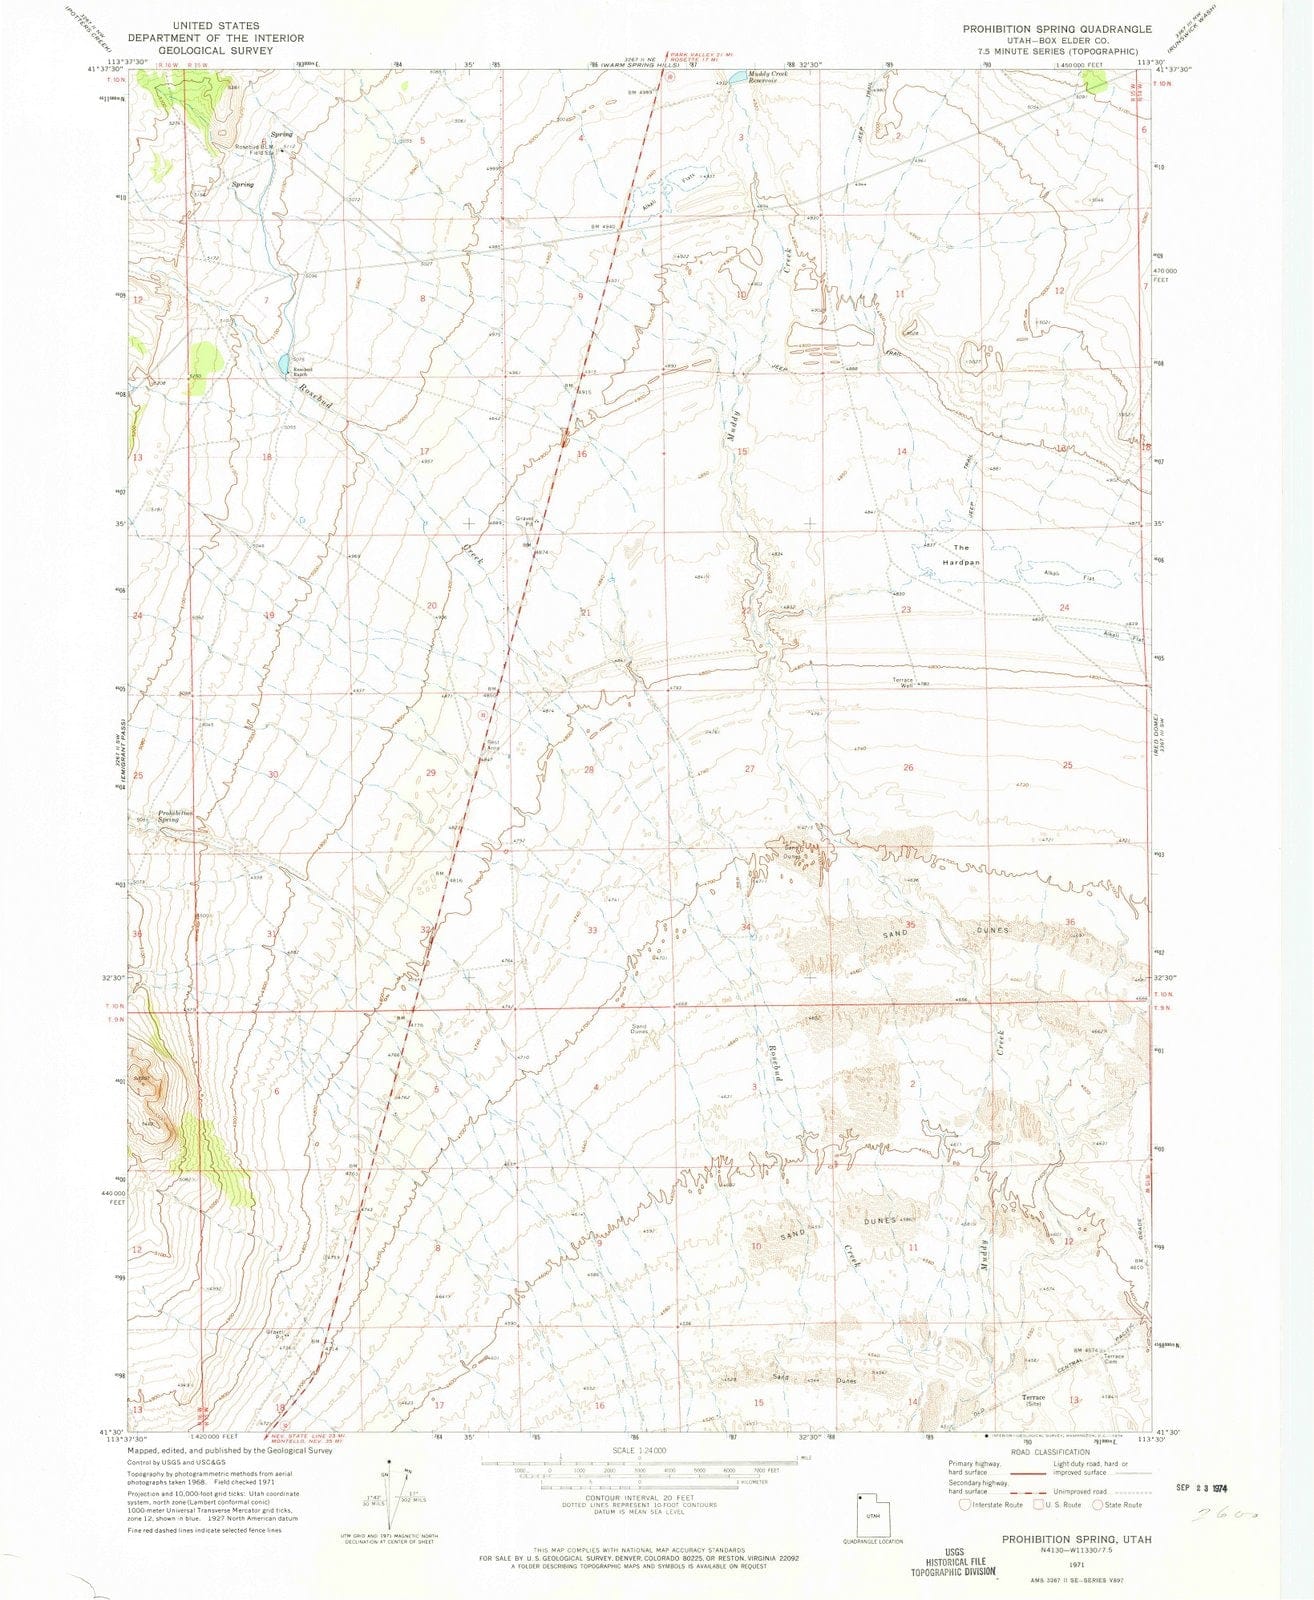 1971 Prohibition Spring, UT - Utah - USGS Topographic Map